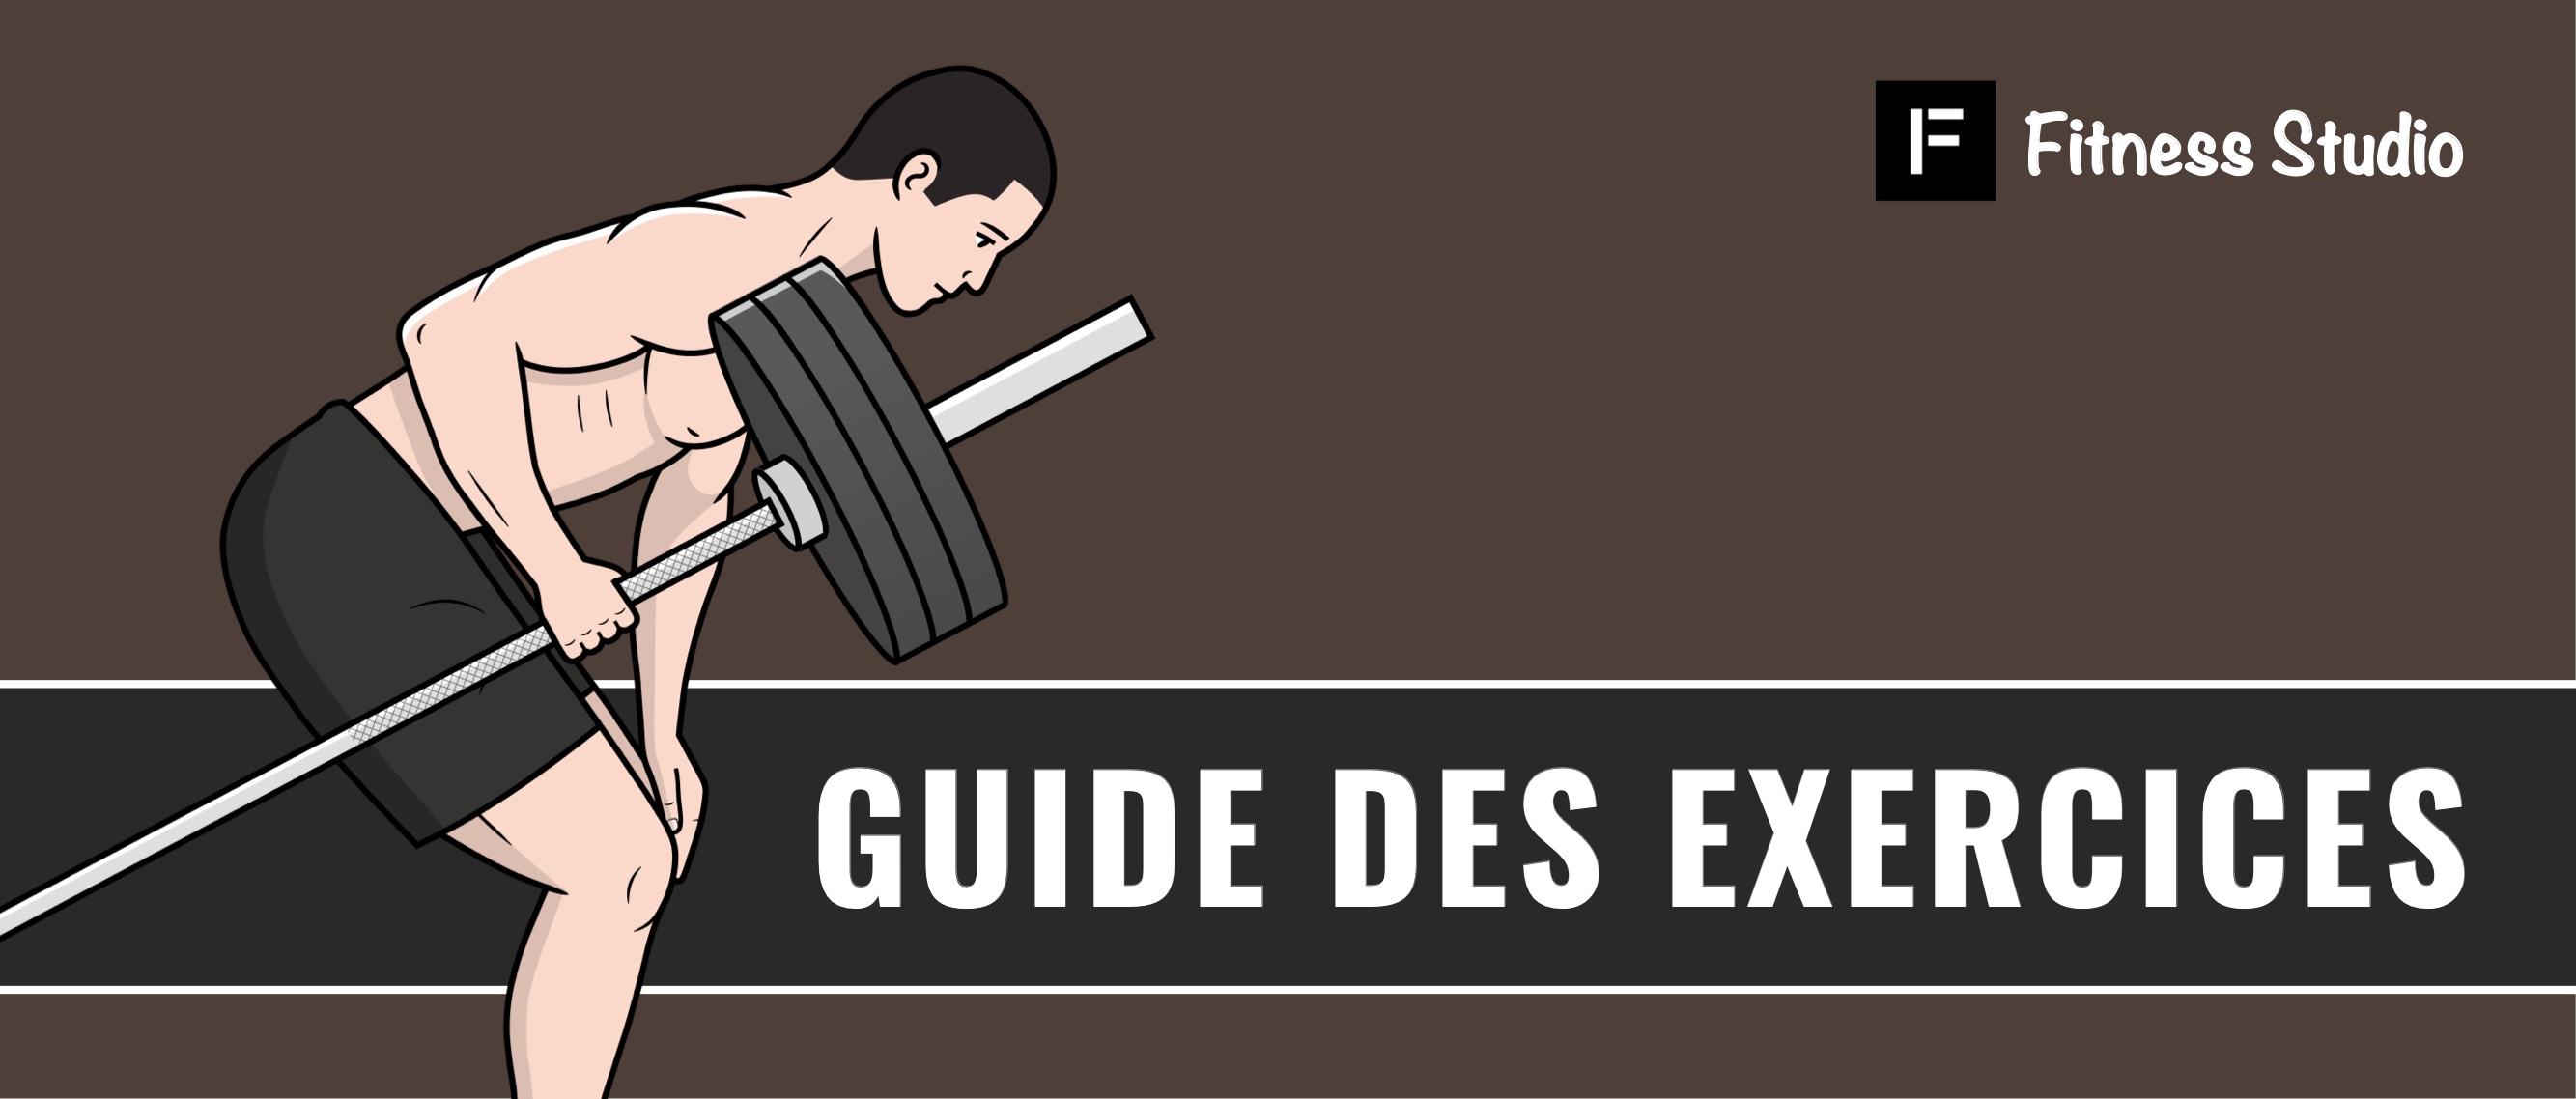 Guide des exercices